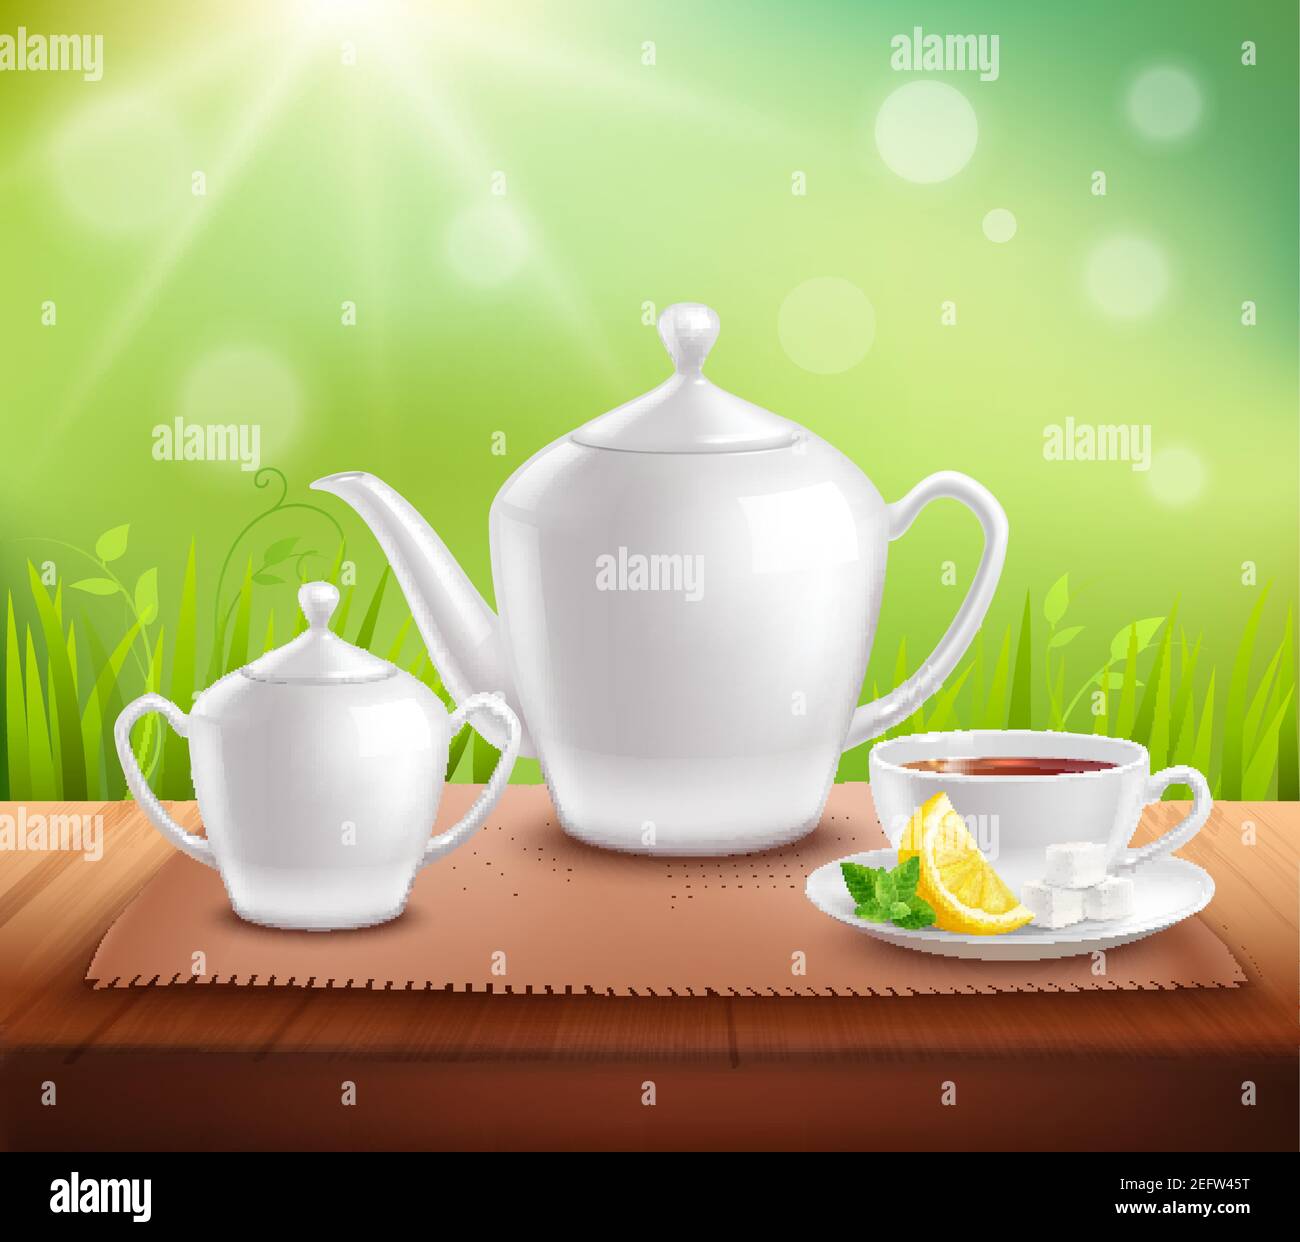 Éléments de composition de service de thé avec la théière et le bol à sucre illustration du vecteur de la cuvette sur table en bois Illustration de Vecteur